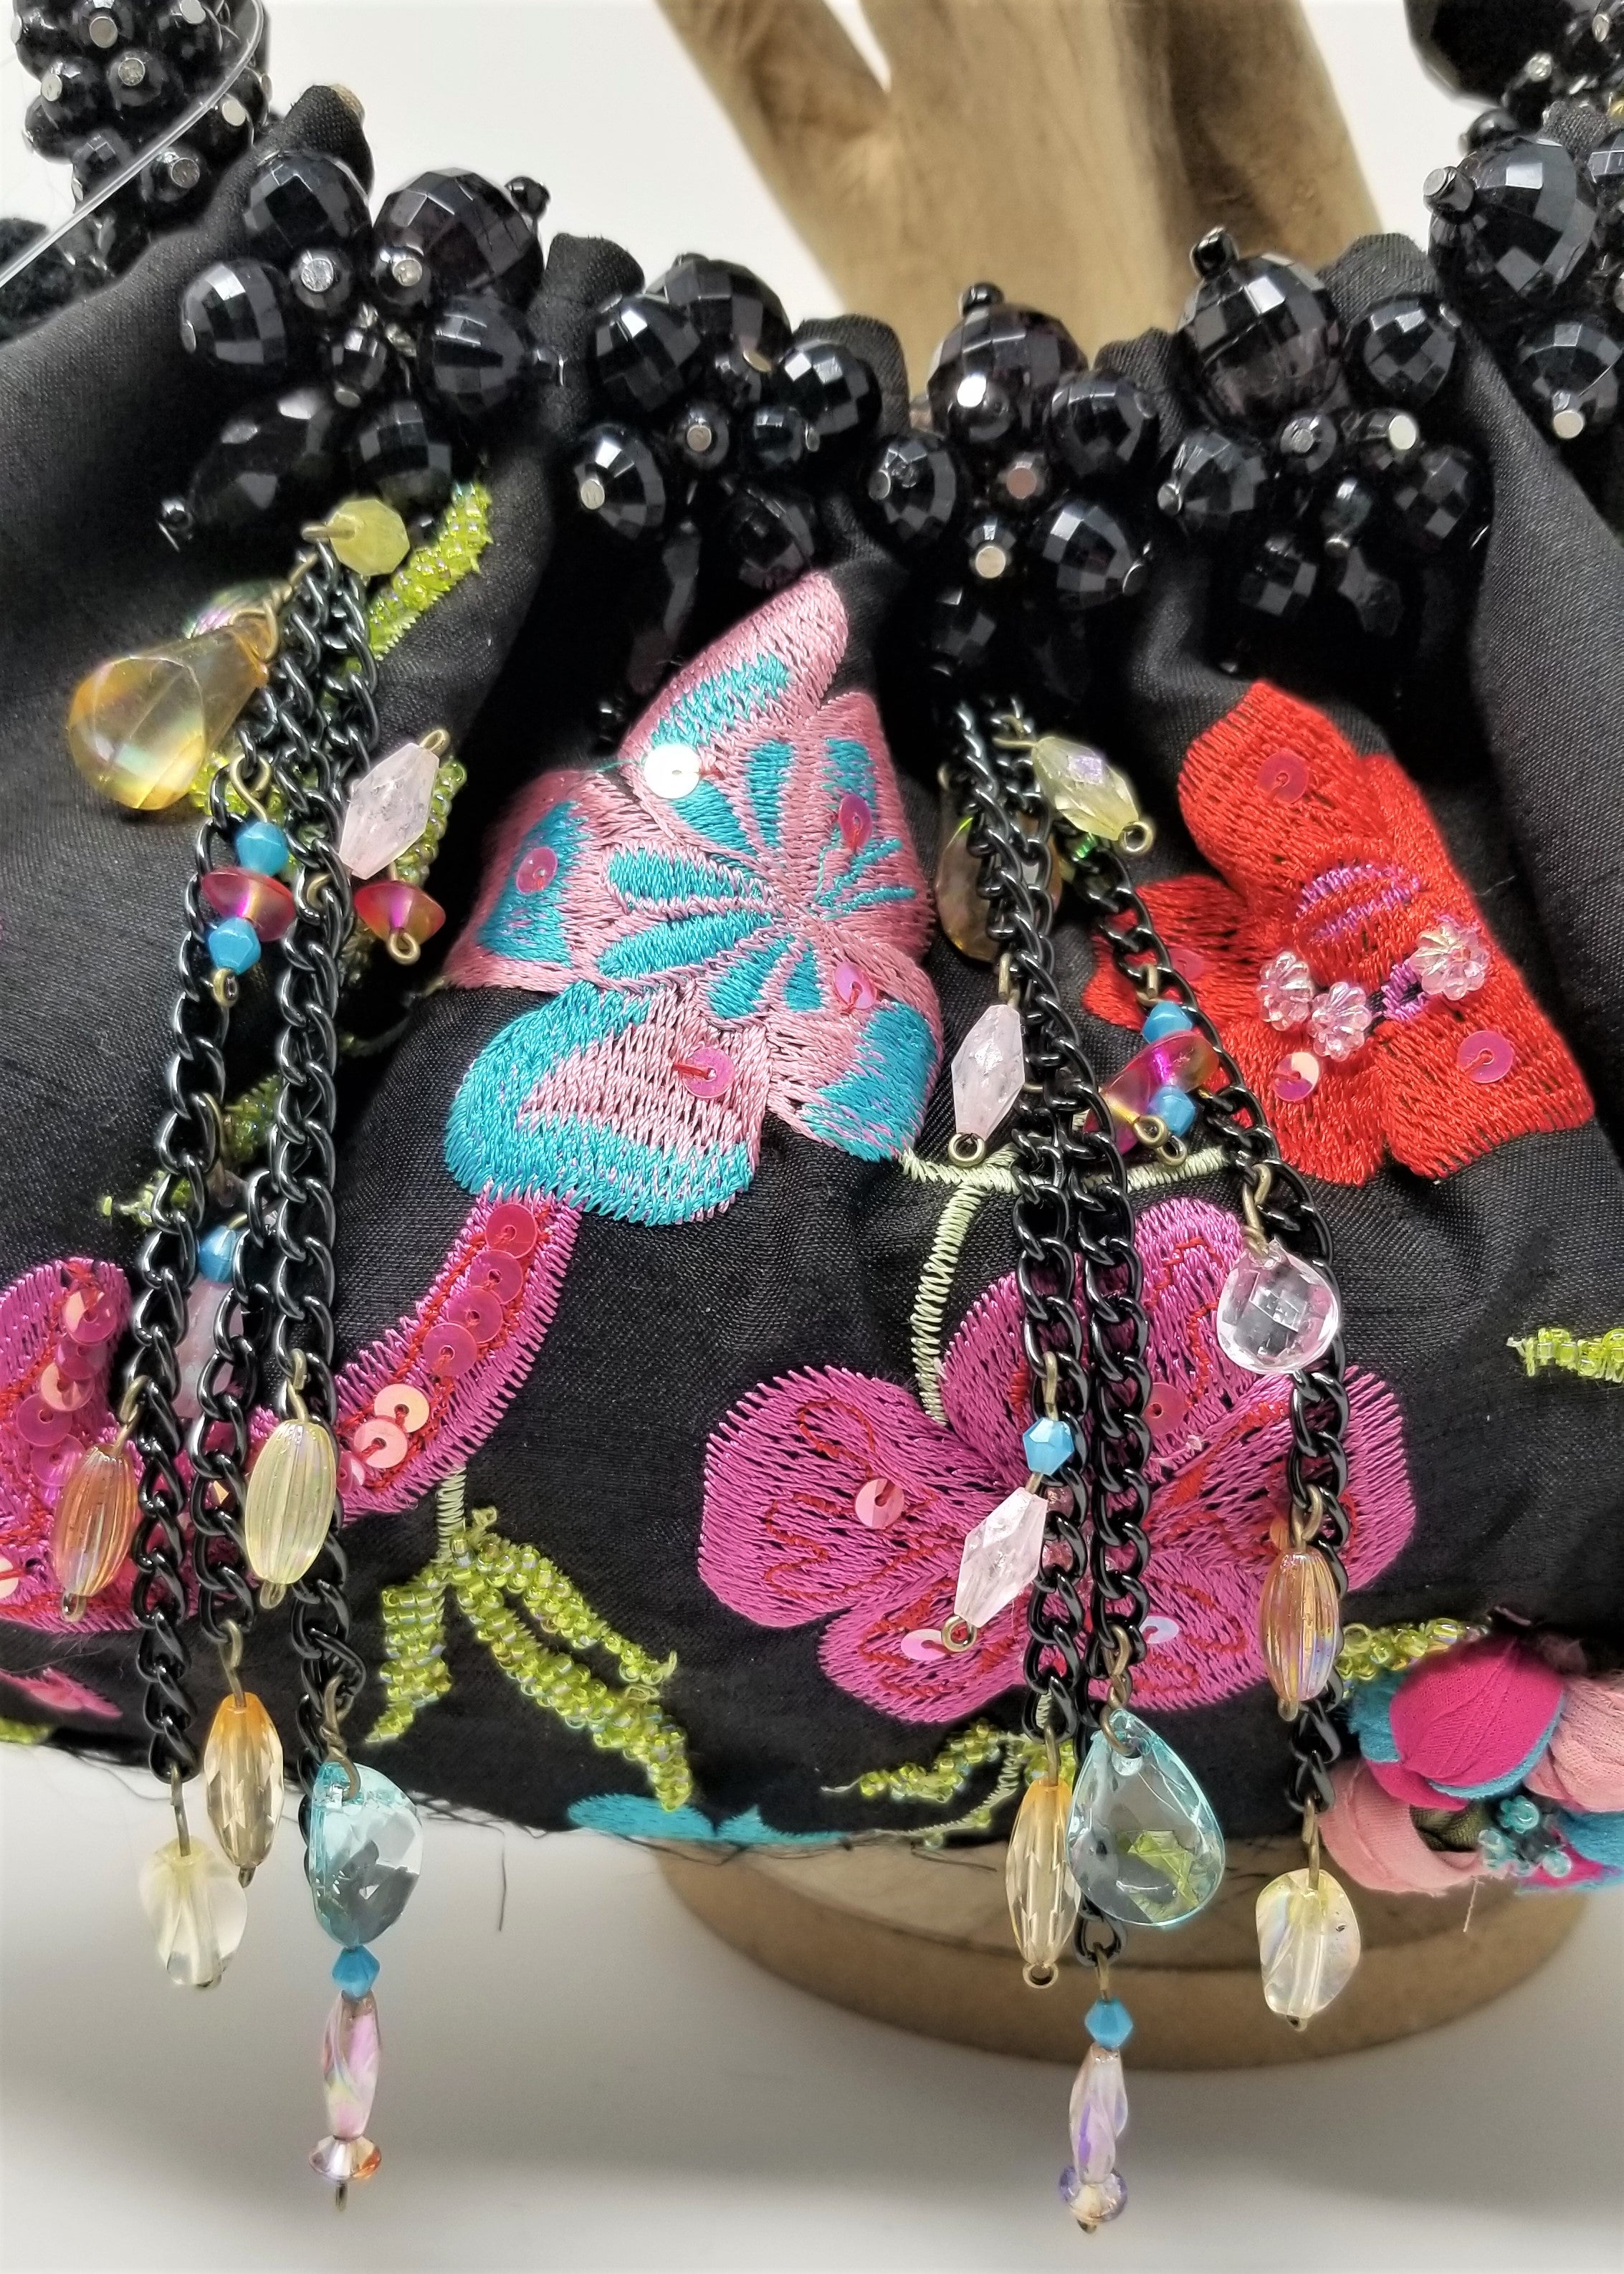 Mary Frances Handbag Embellished Spring Floral